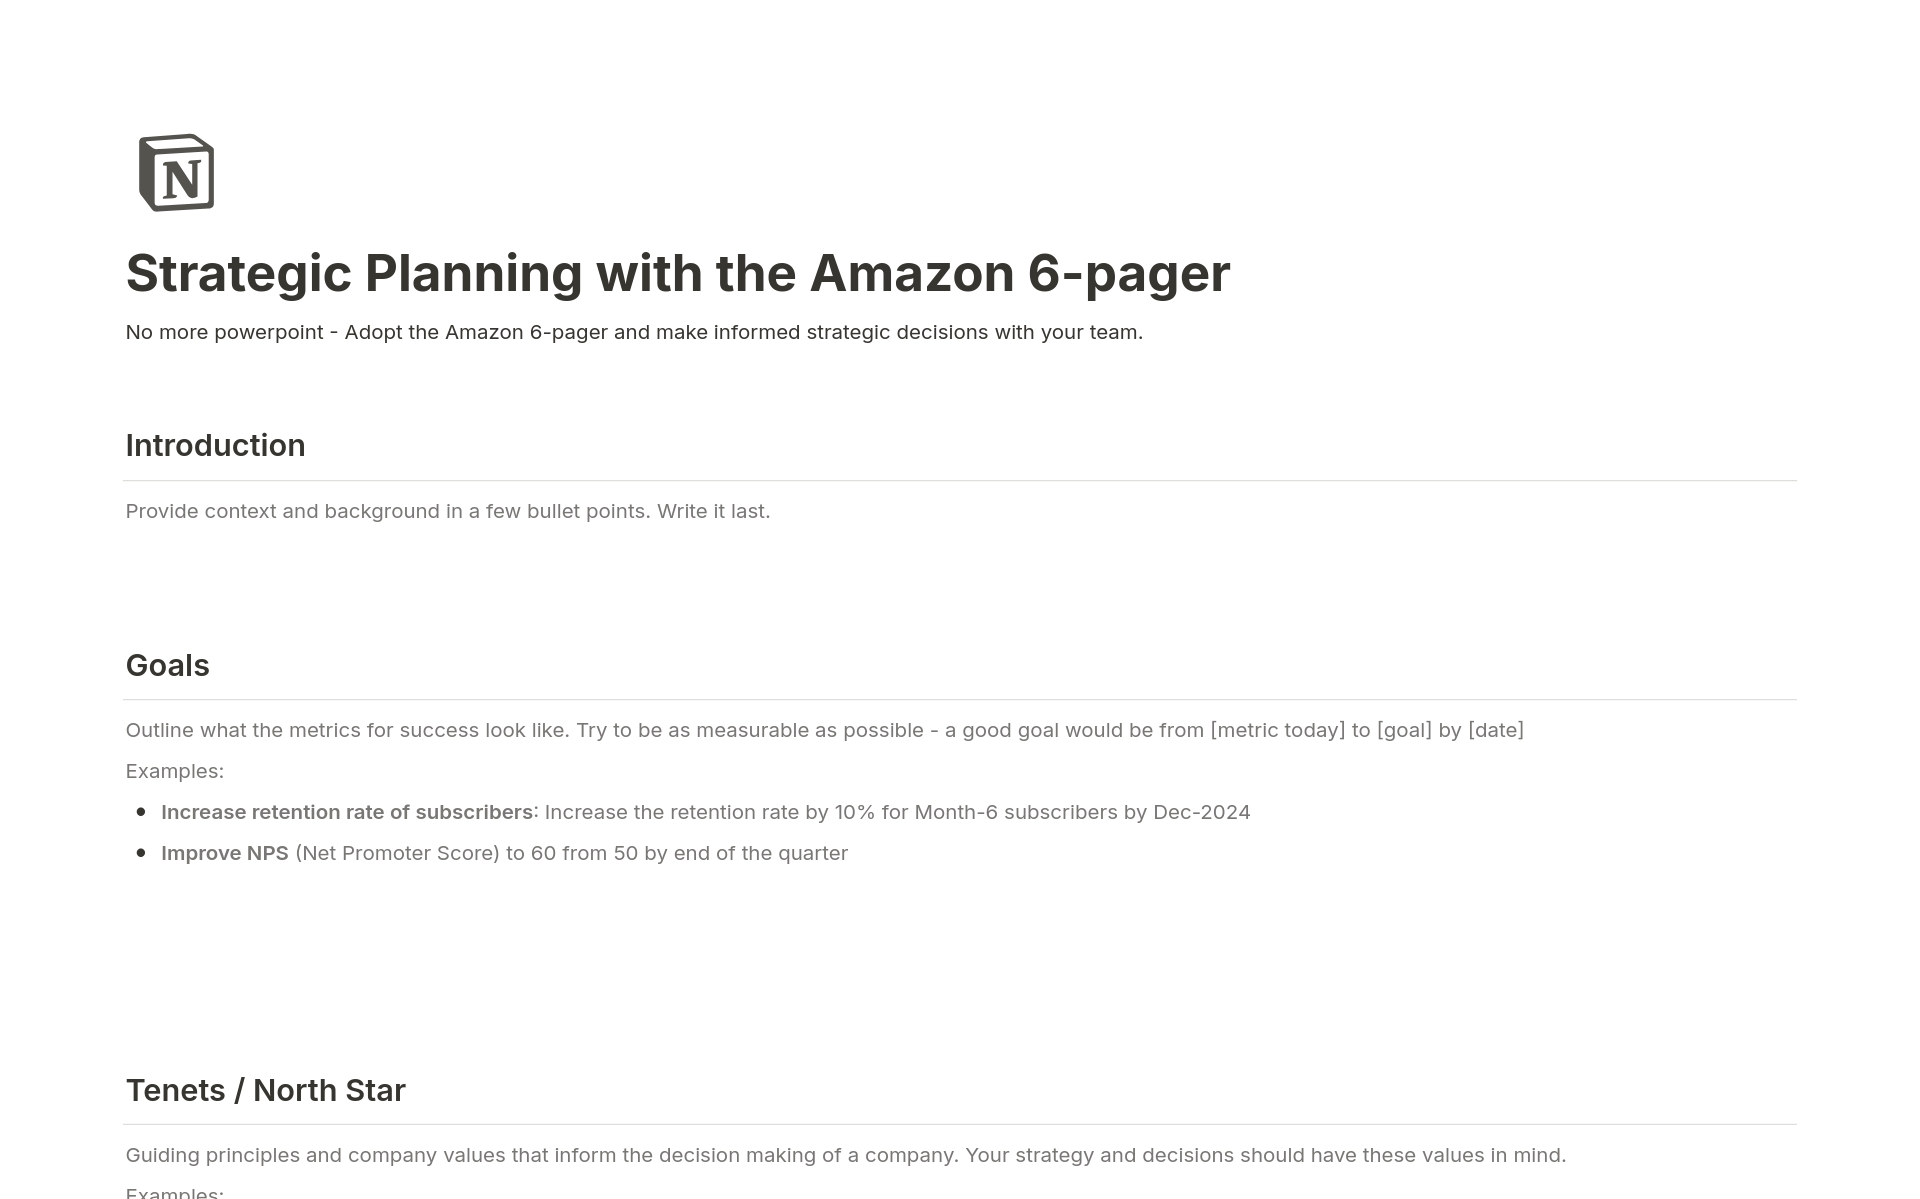 Uma prévia do modelo para Strategic Planning with the Amazon 6-pager